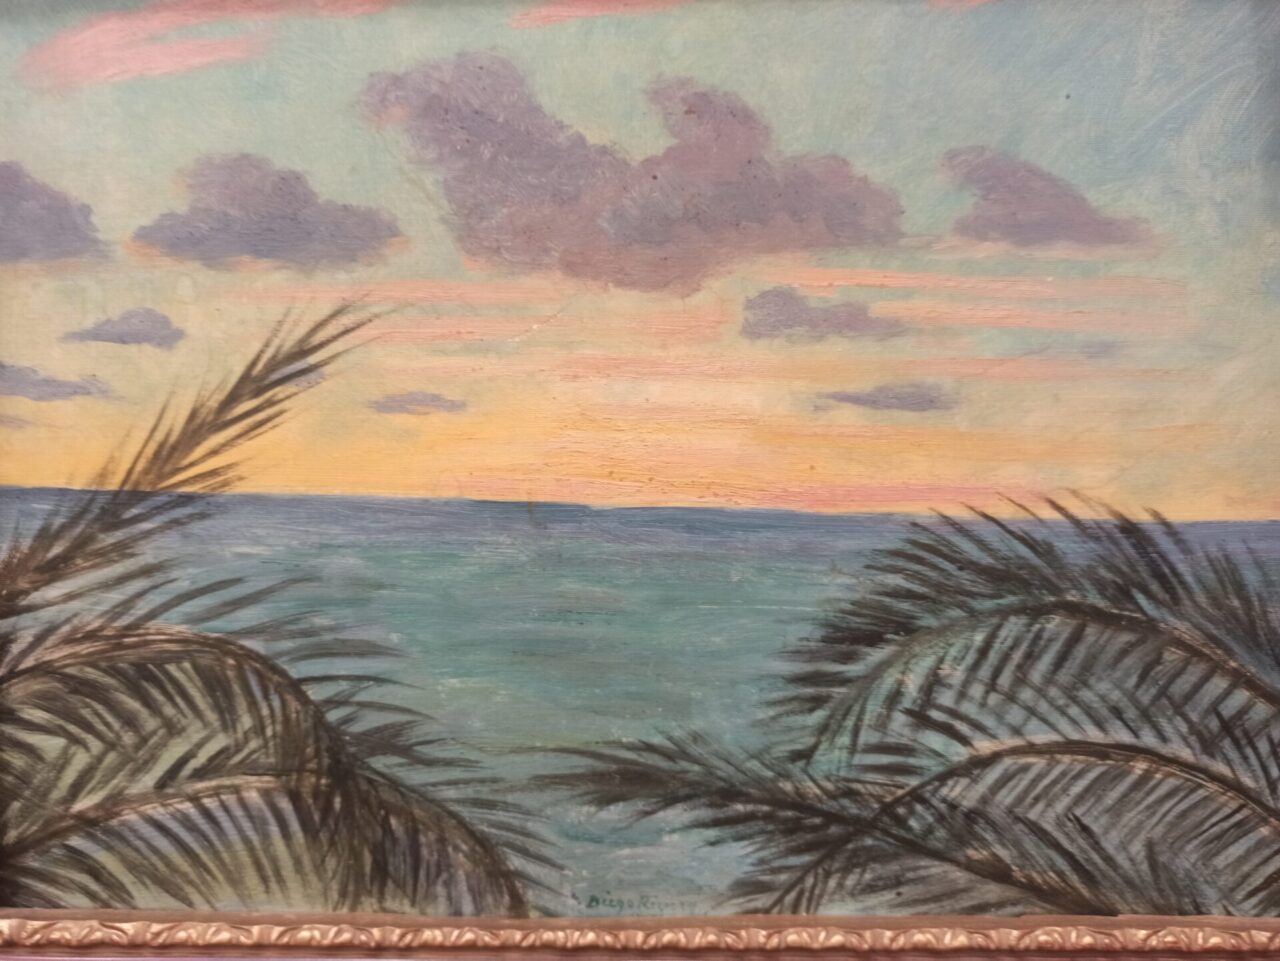 La historia del Paisaje de Acapulco que pintó Diego Rivera un año antes de morir